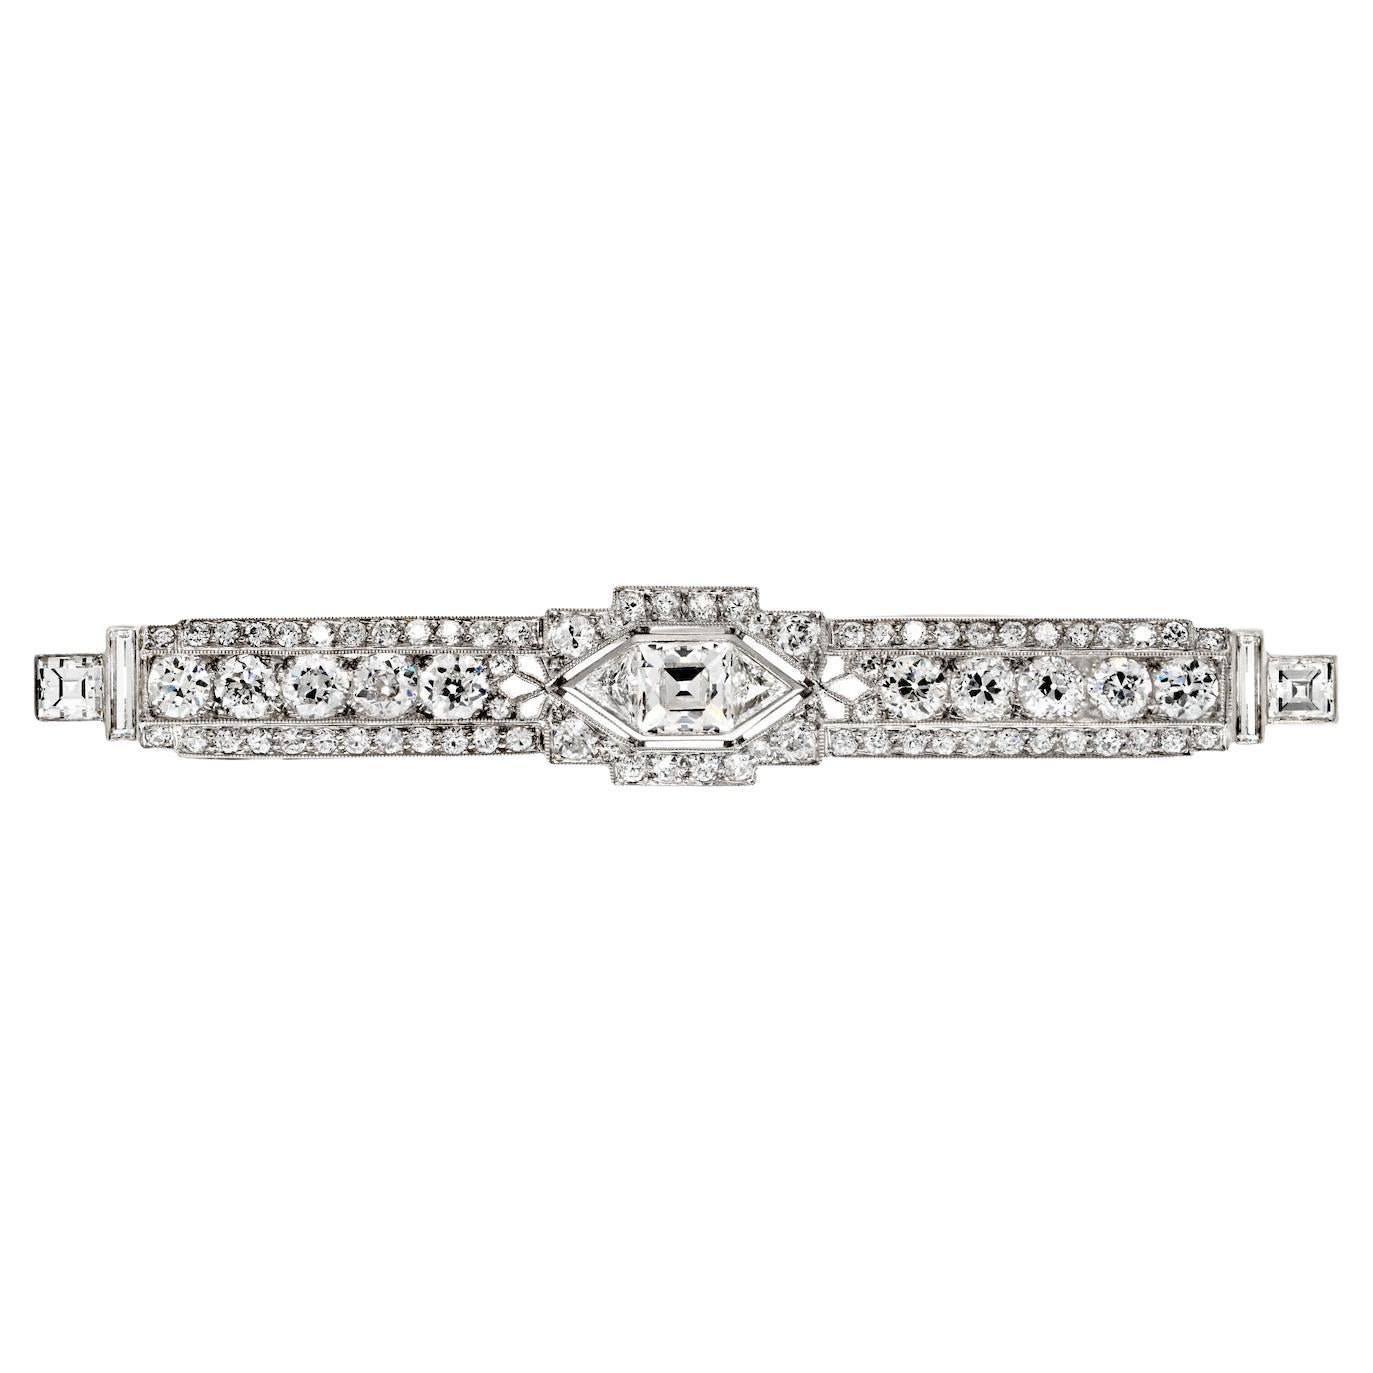 Platinum 5.25cttw Mixed Cut Diamond Art Deco Bar Brooch For Sale